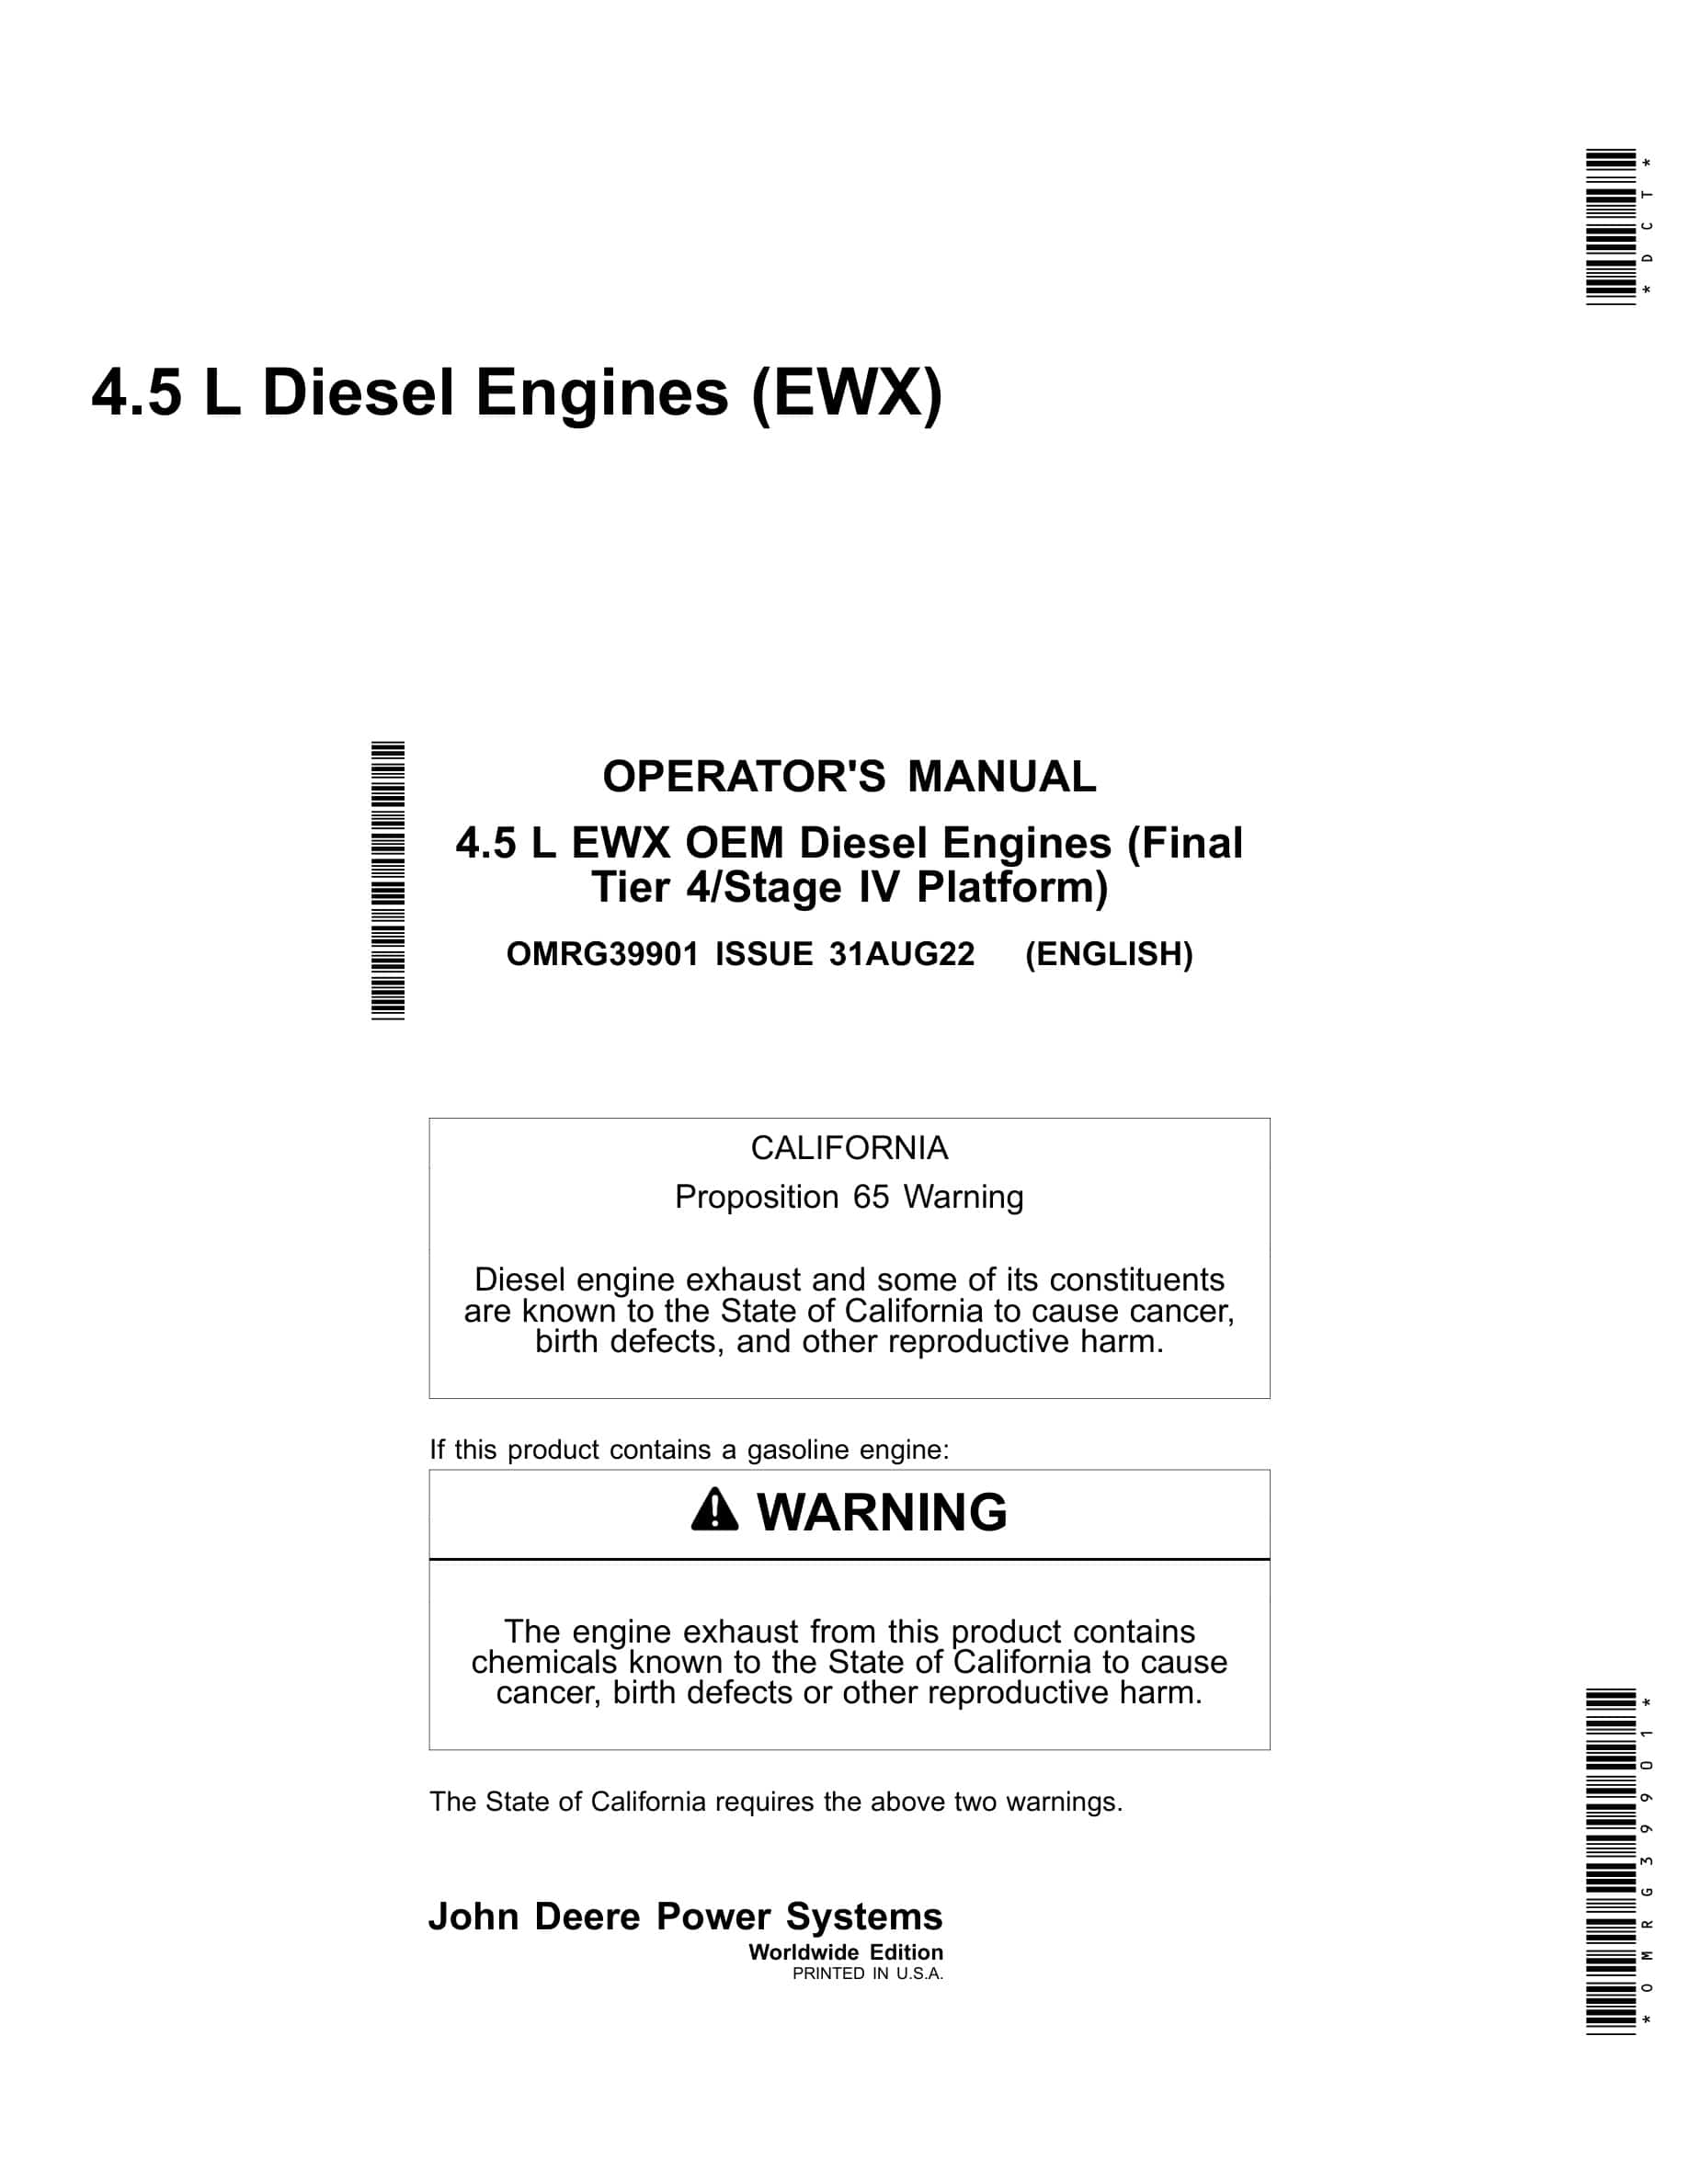 John Deere PowerTech 4.5 L EWX OEM (Final Tier 4 Stage IV Platform) Diesel Engines Operator Manual OMRG39901-1